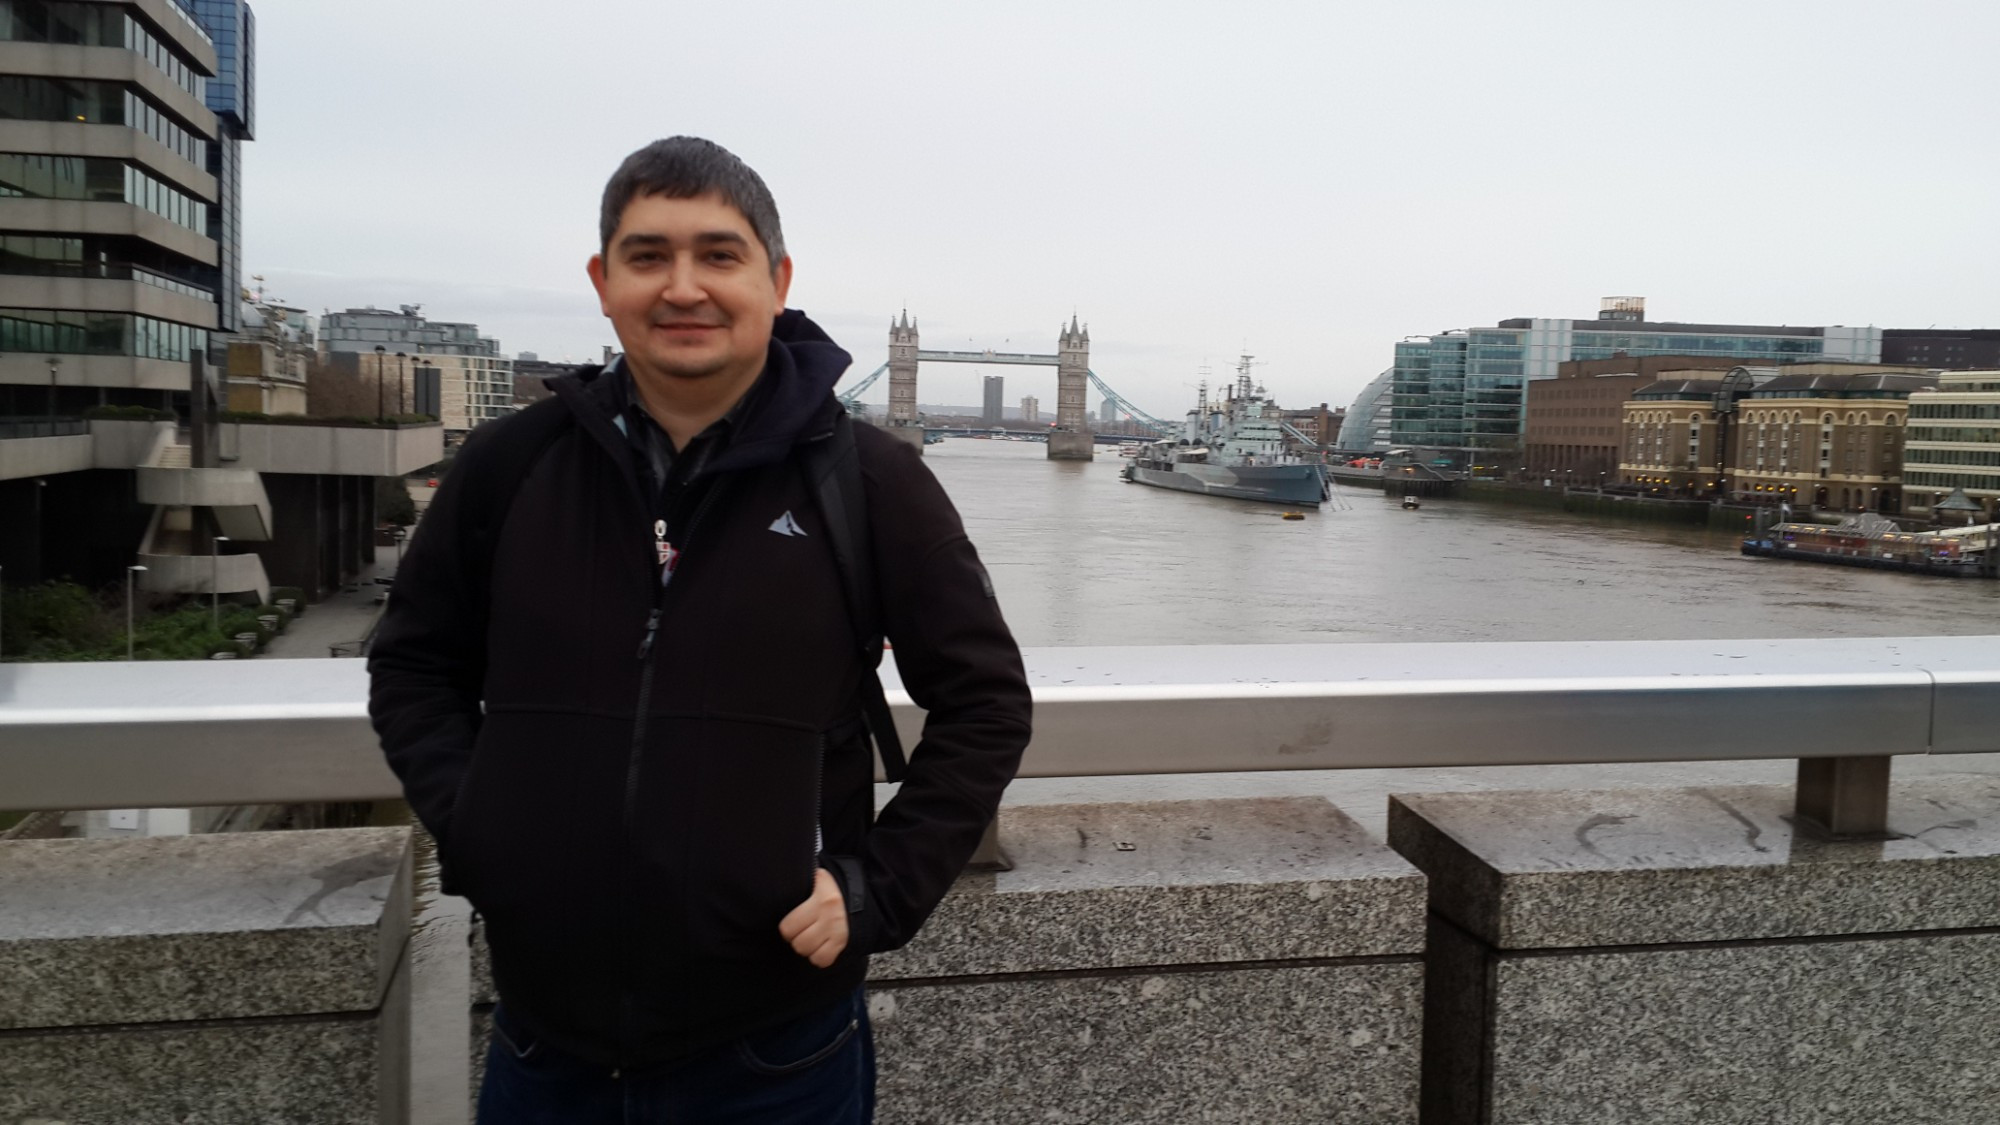 Лондон. Я на Лондонском мосту. (03.01.2016).